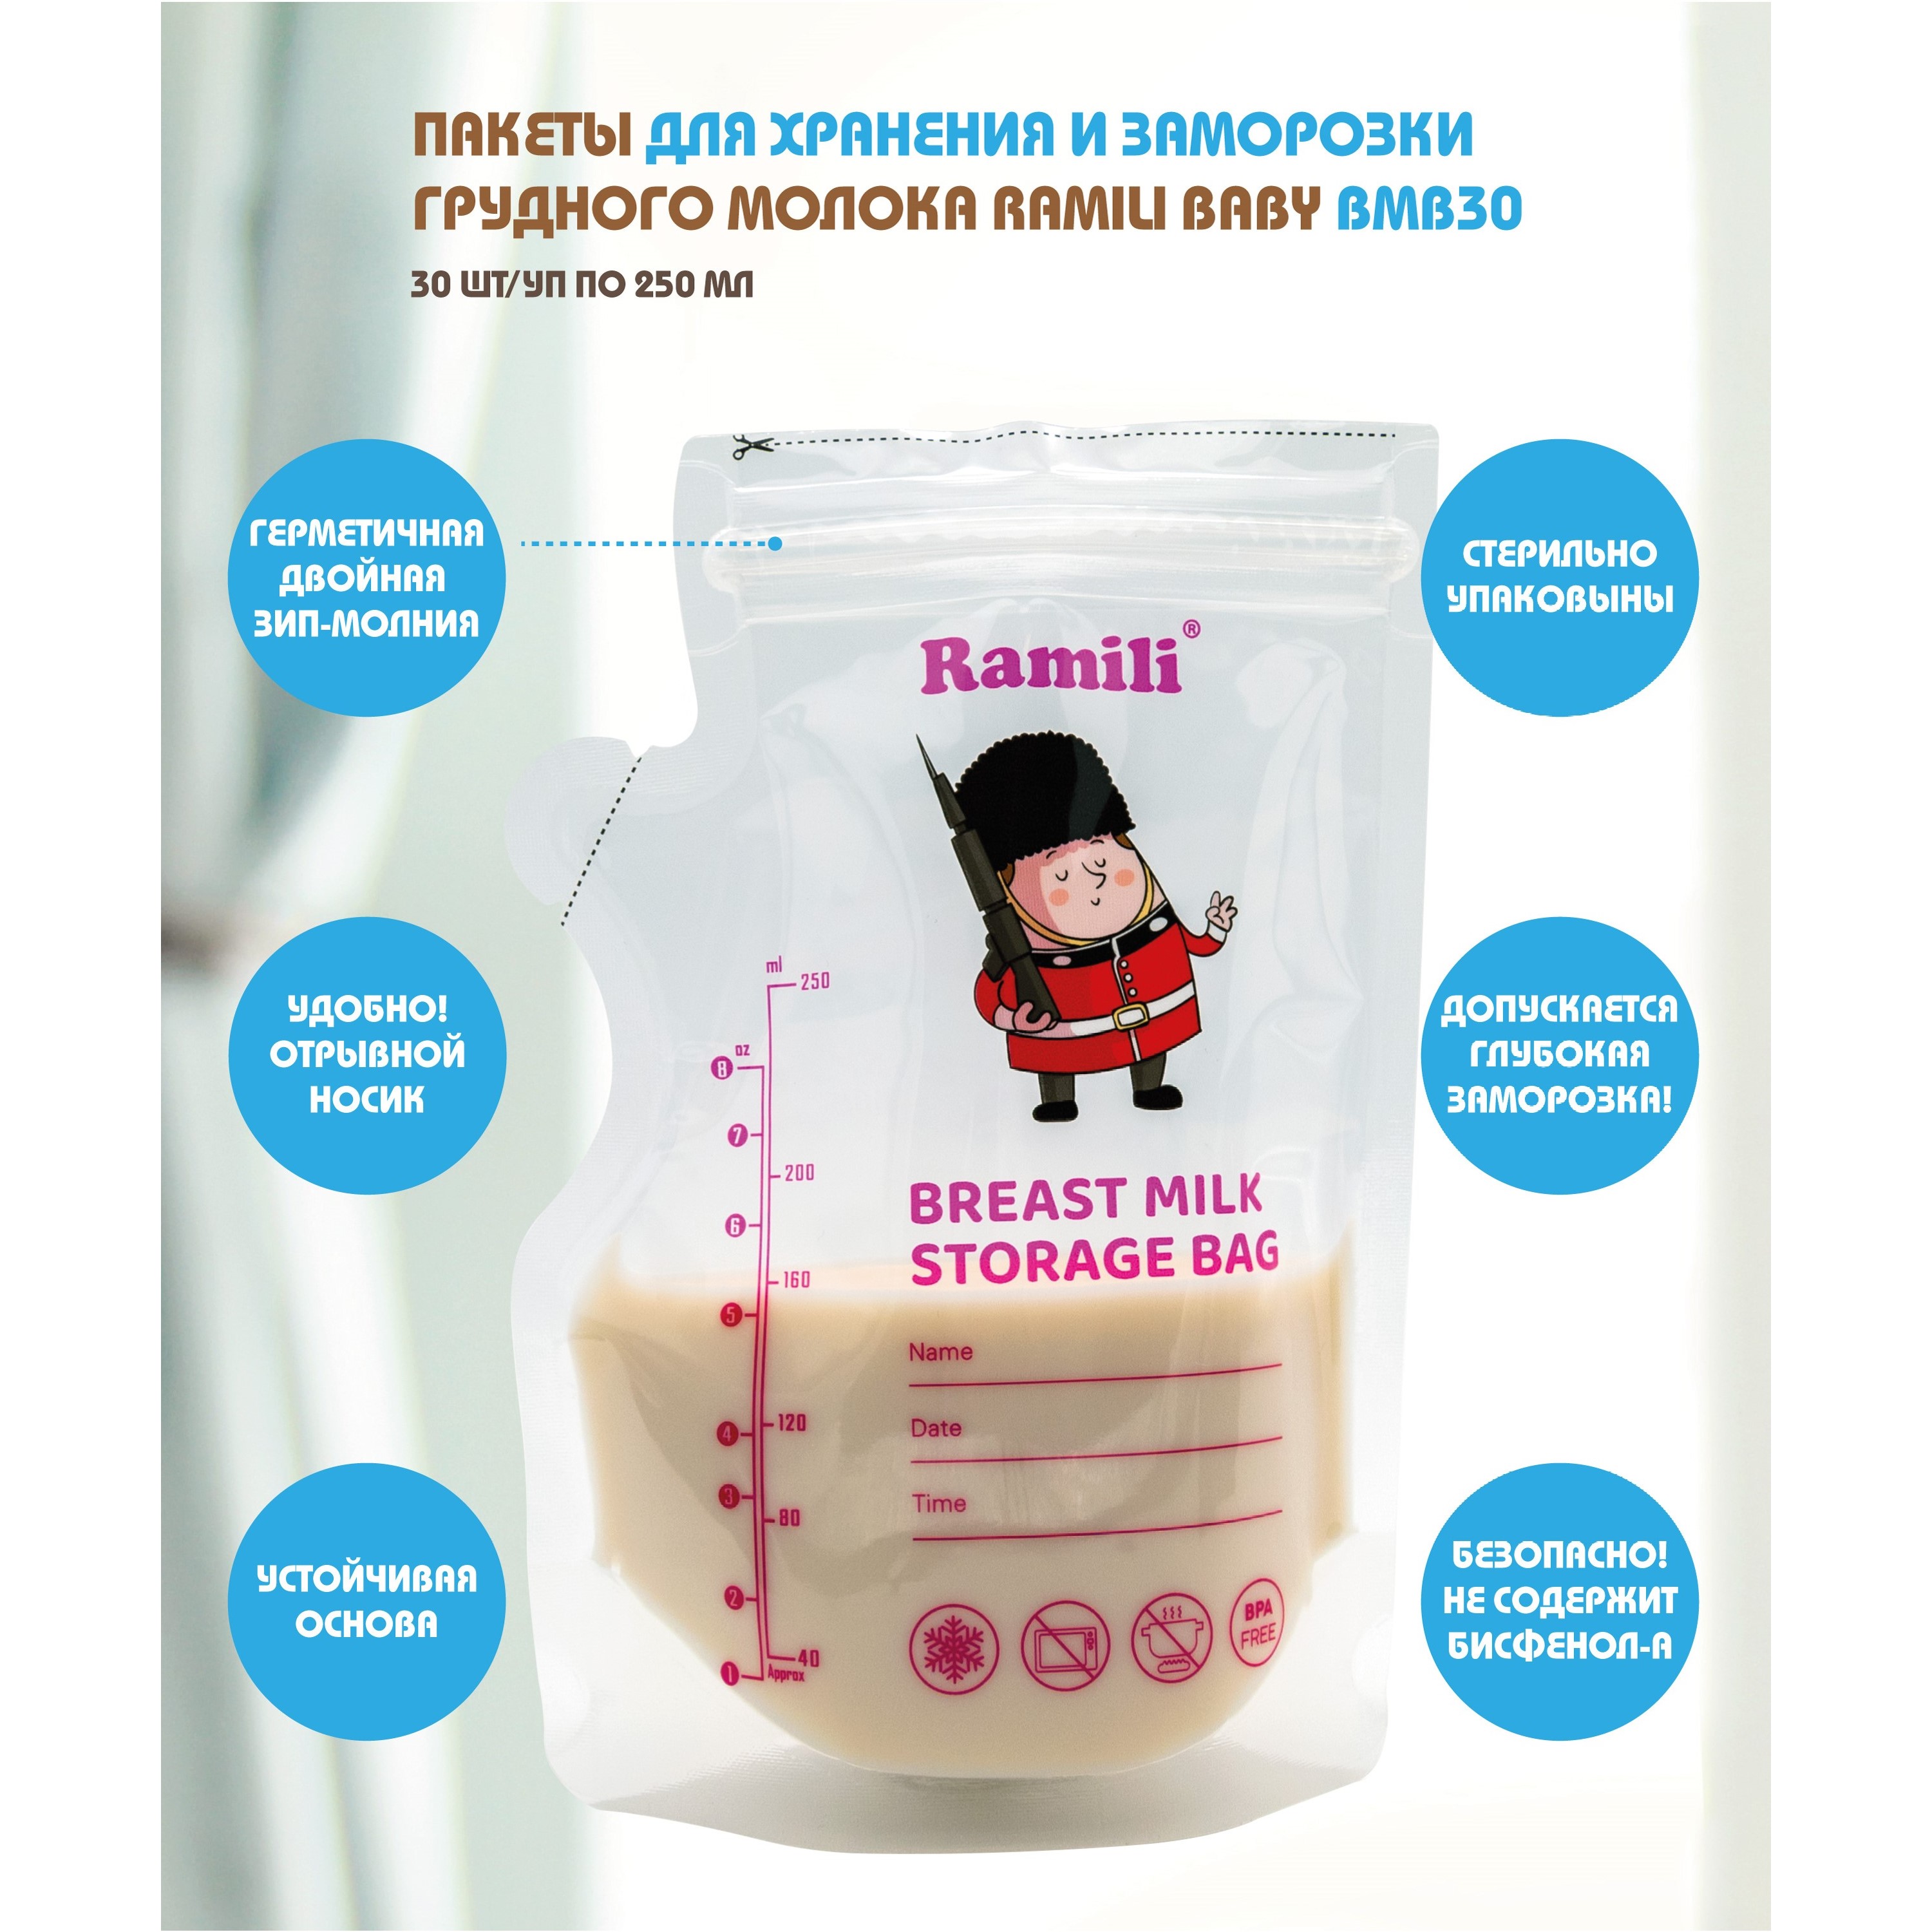 Пакеты для хранения и заморозки грудного молока Ramili Baby BMB30 пакеты для хранения грудного молока kunder 200 мл одноразовые 25 шт